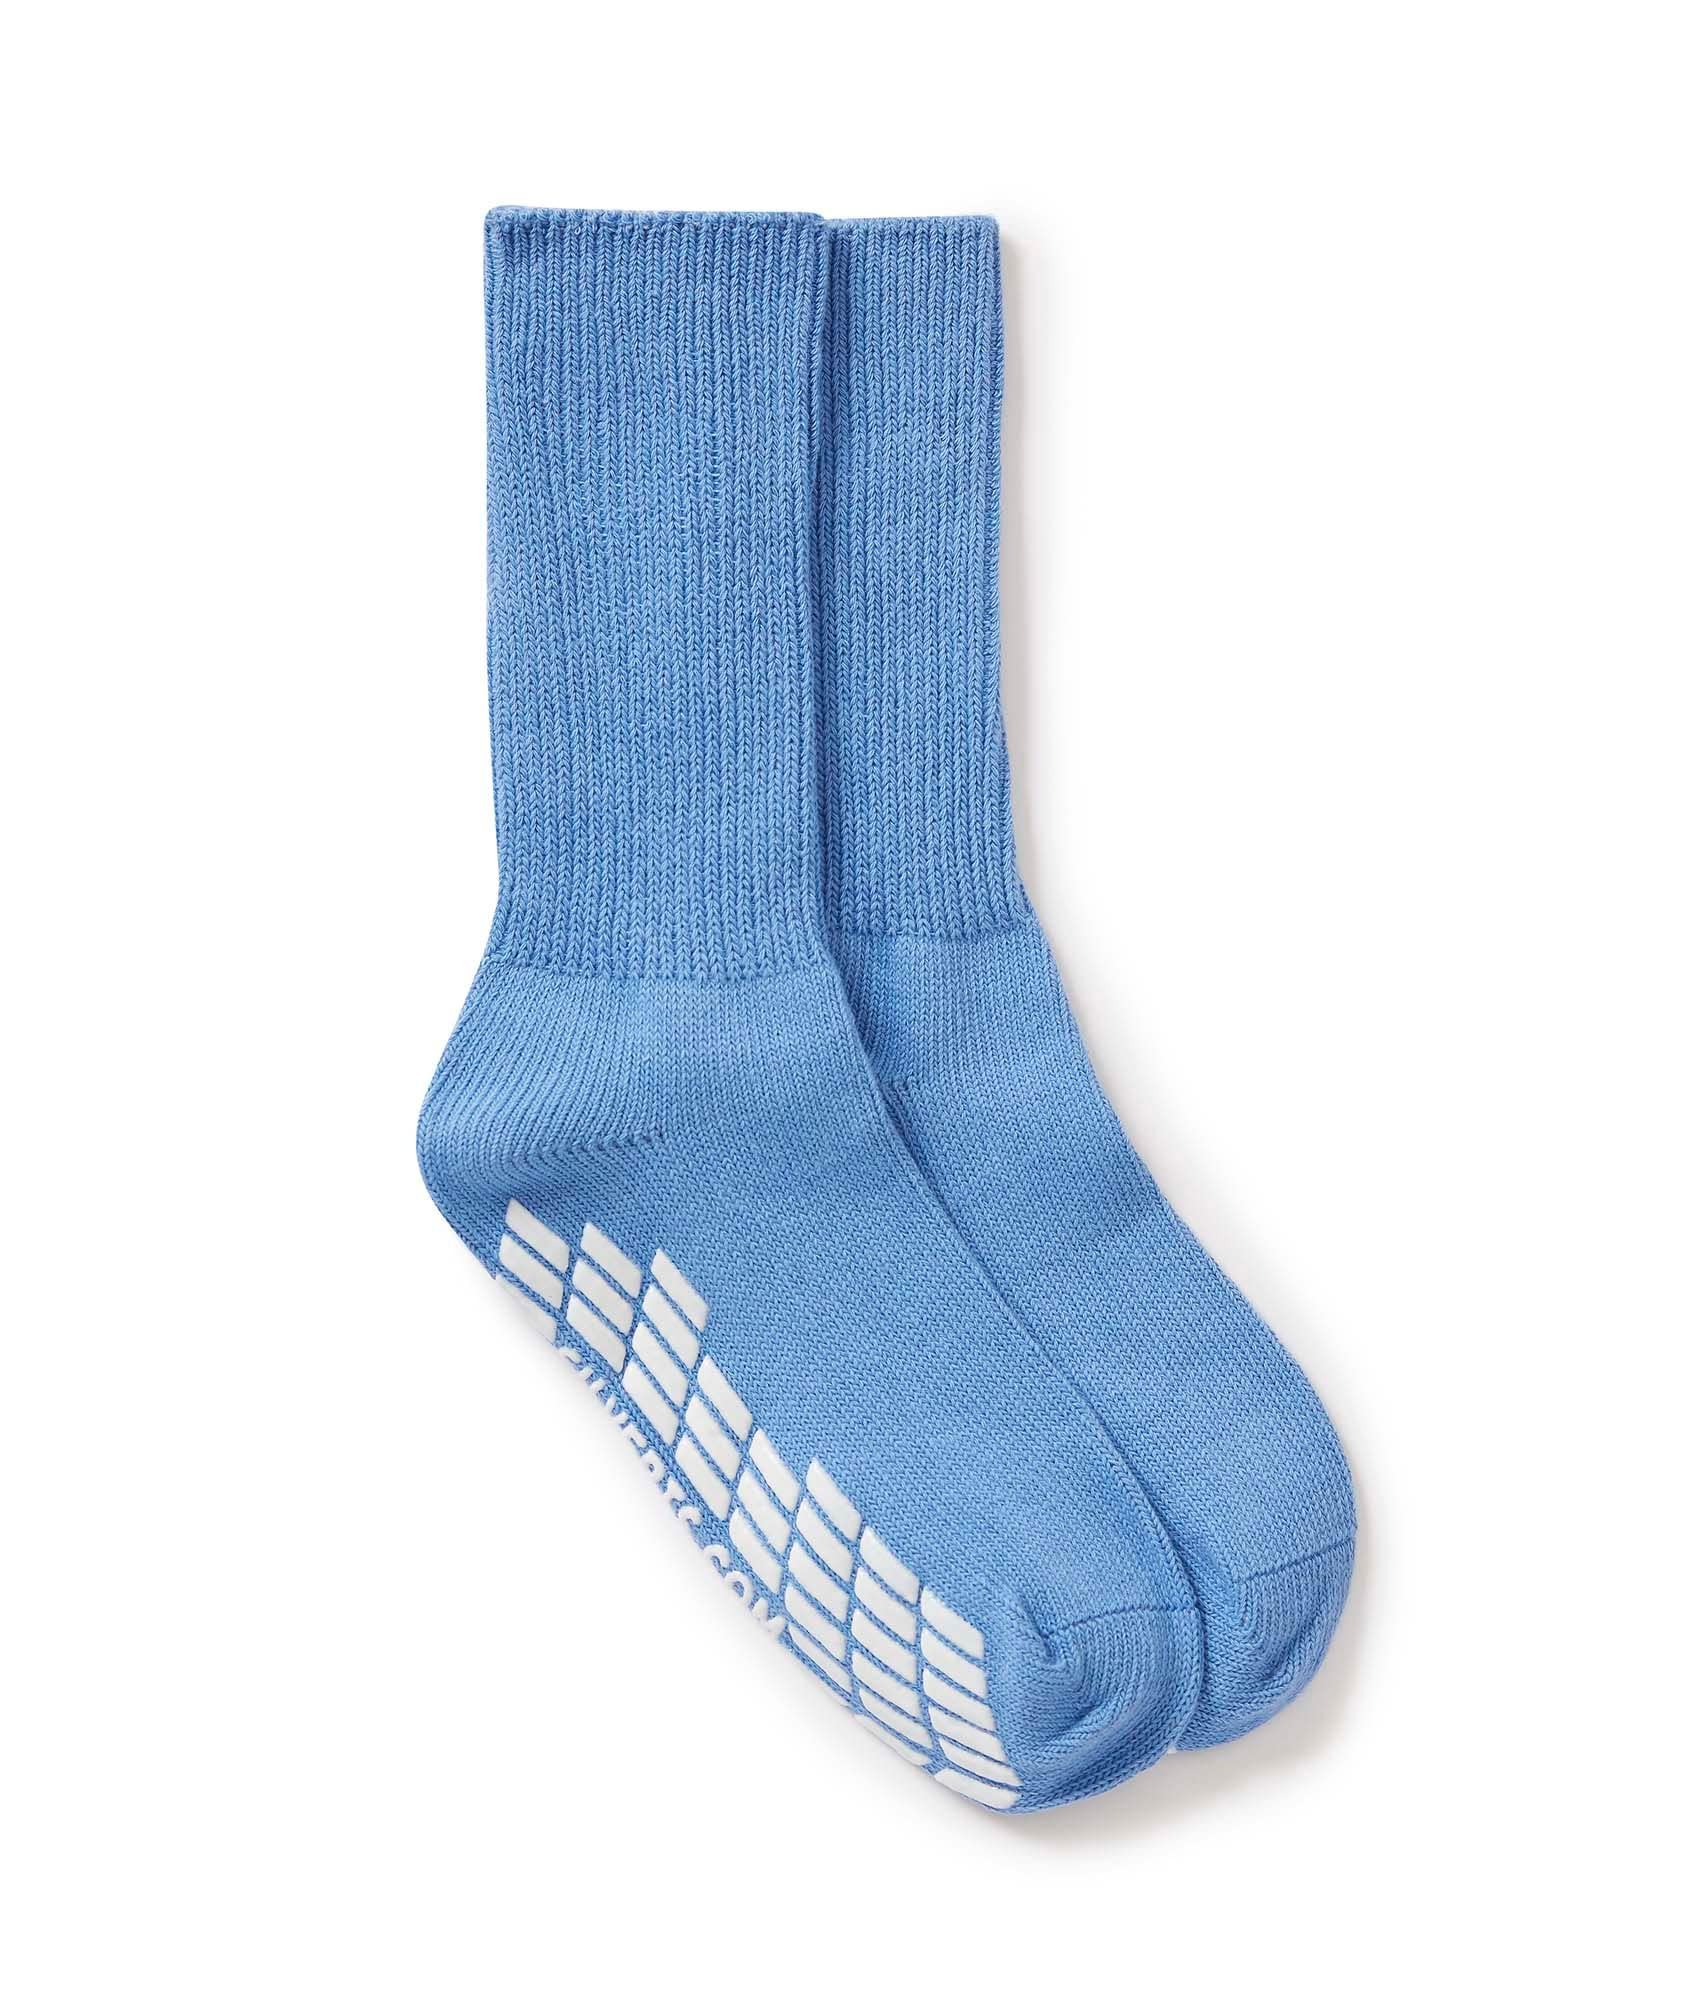 Diabetic Socks - Non Skid/No Slip Grip Hospital Socks - Unisex 2